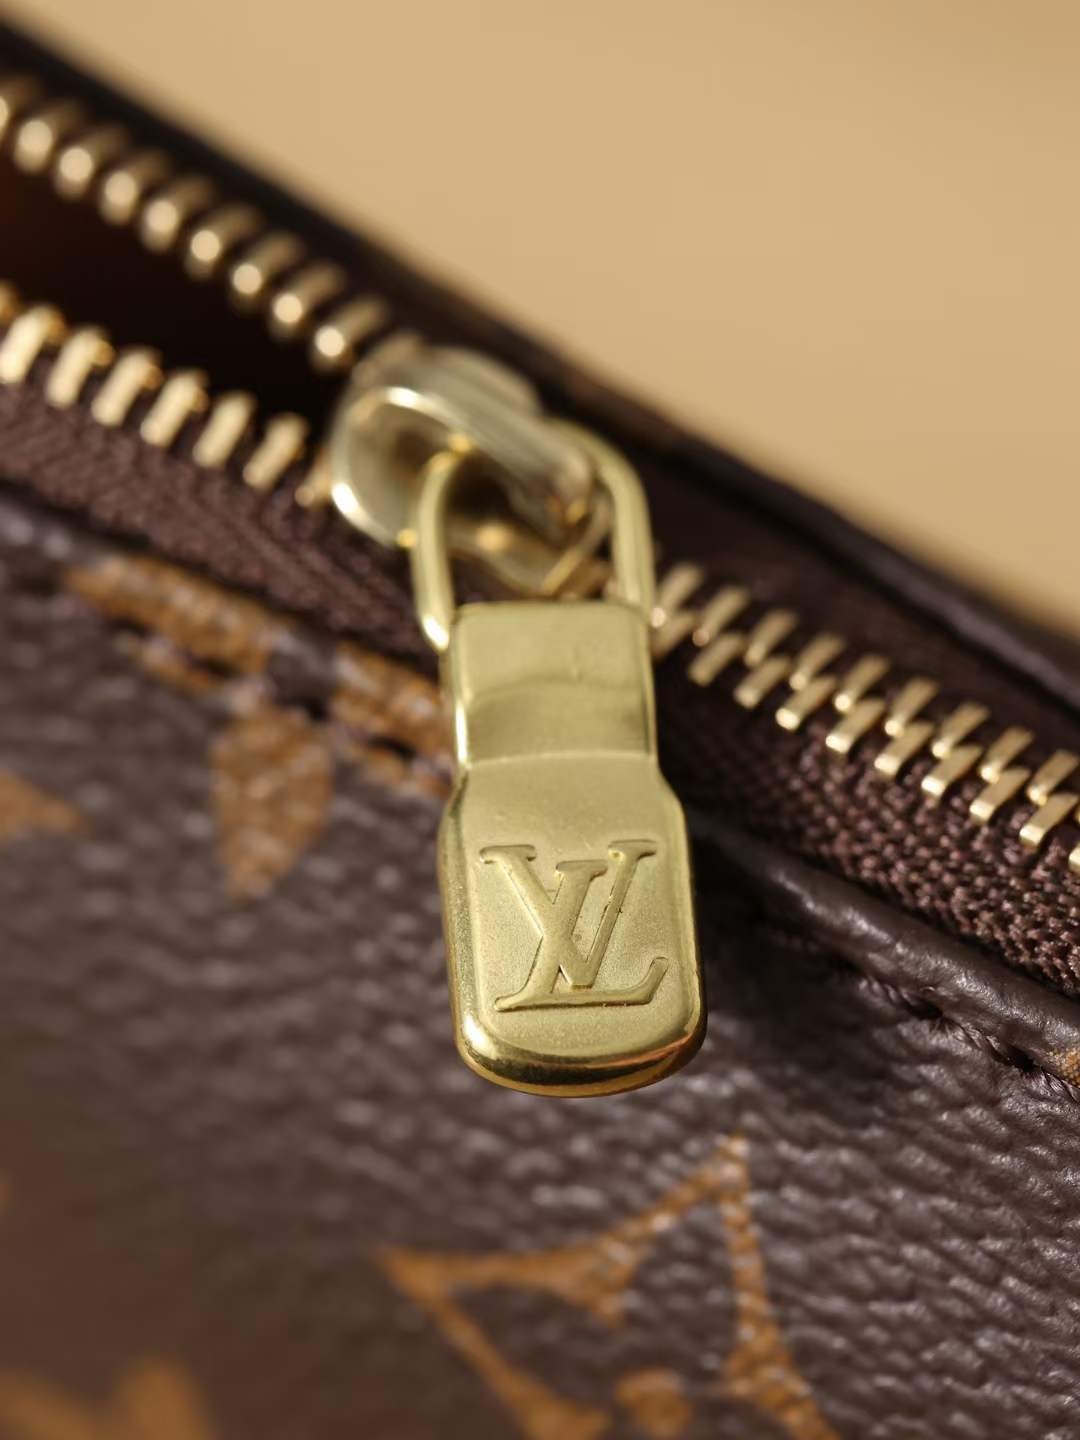 Louis Vuitton M40712 Pochette Accessoires top replica bag 23.5 x 13.5 x 4 cm hardware details (2022 Edition)-Best Quality Fake designer Bag Review, Replica designer bag ru